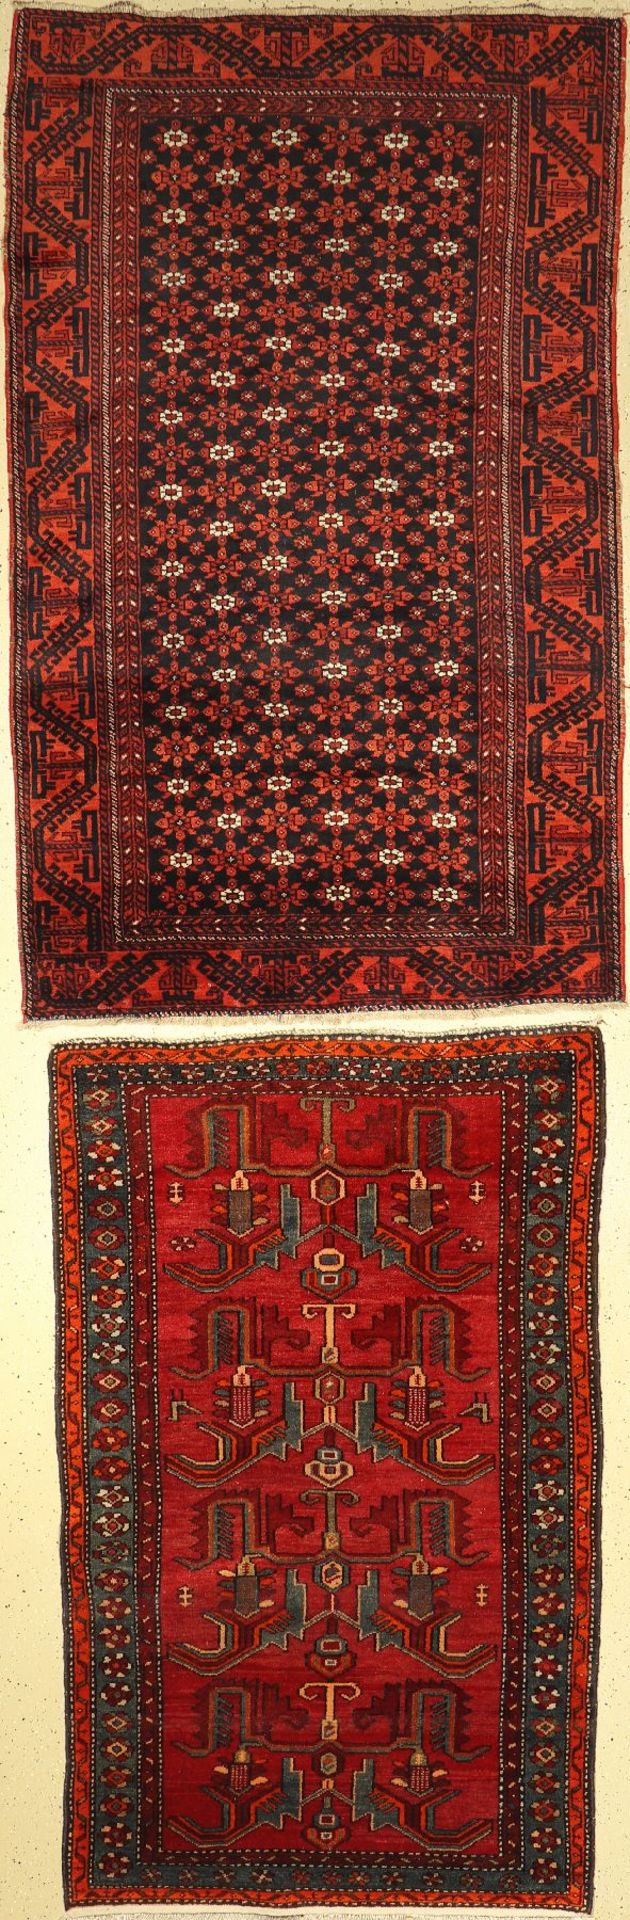 2 Persische Teppiche,   Belutsch, ca, 50 Jahre, Wolle auf